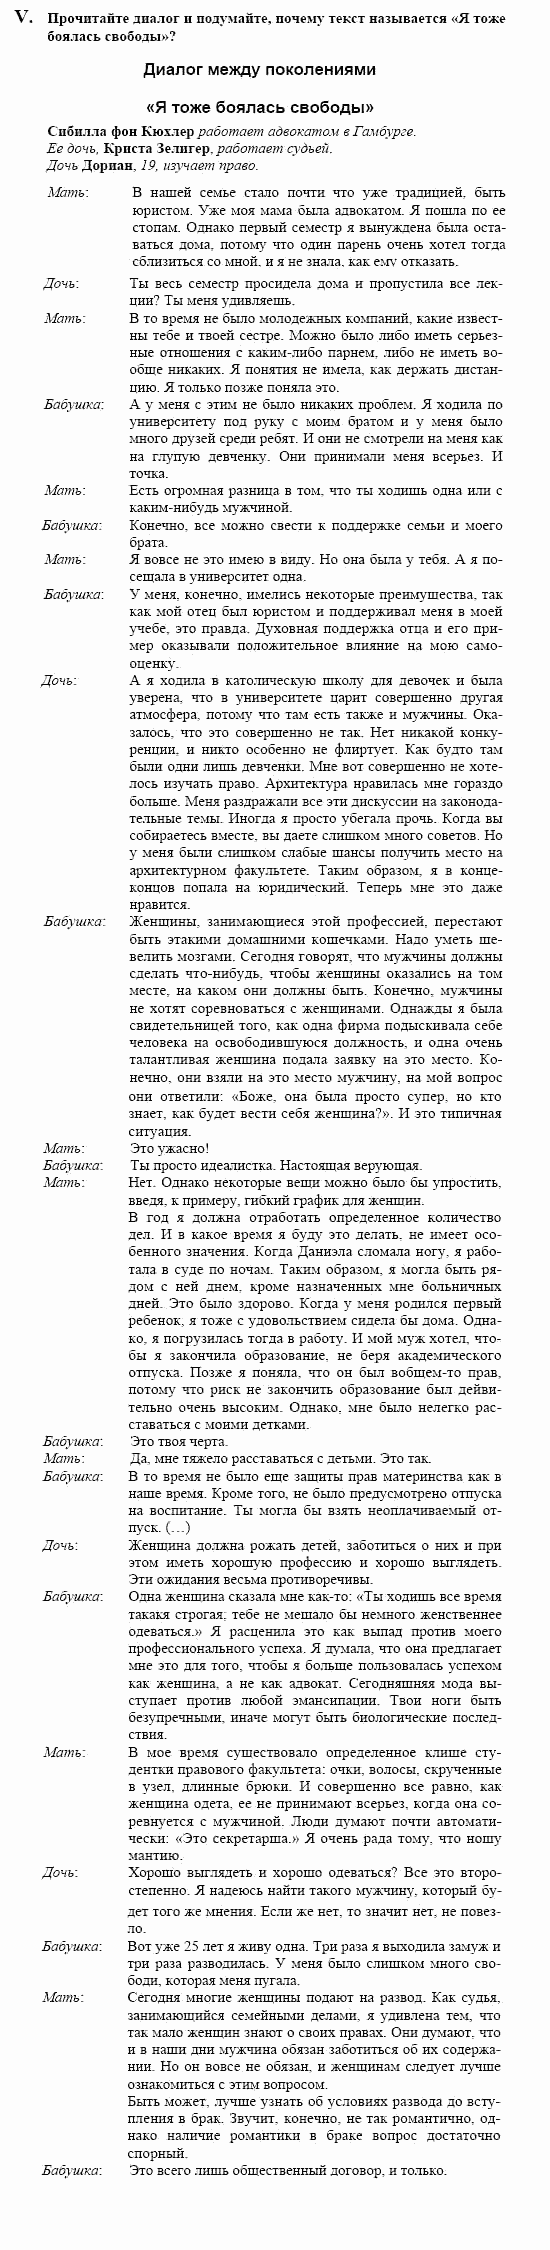 Немецкий язык, 10 класс, Воронина, Карелина, 2002, V Задание: text